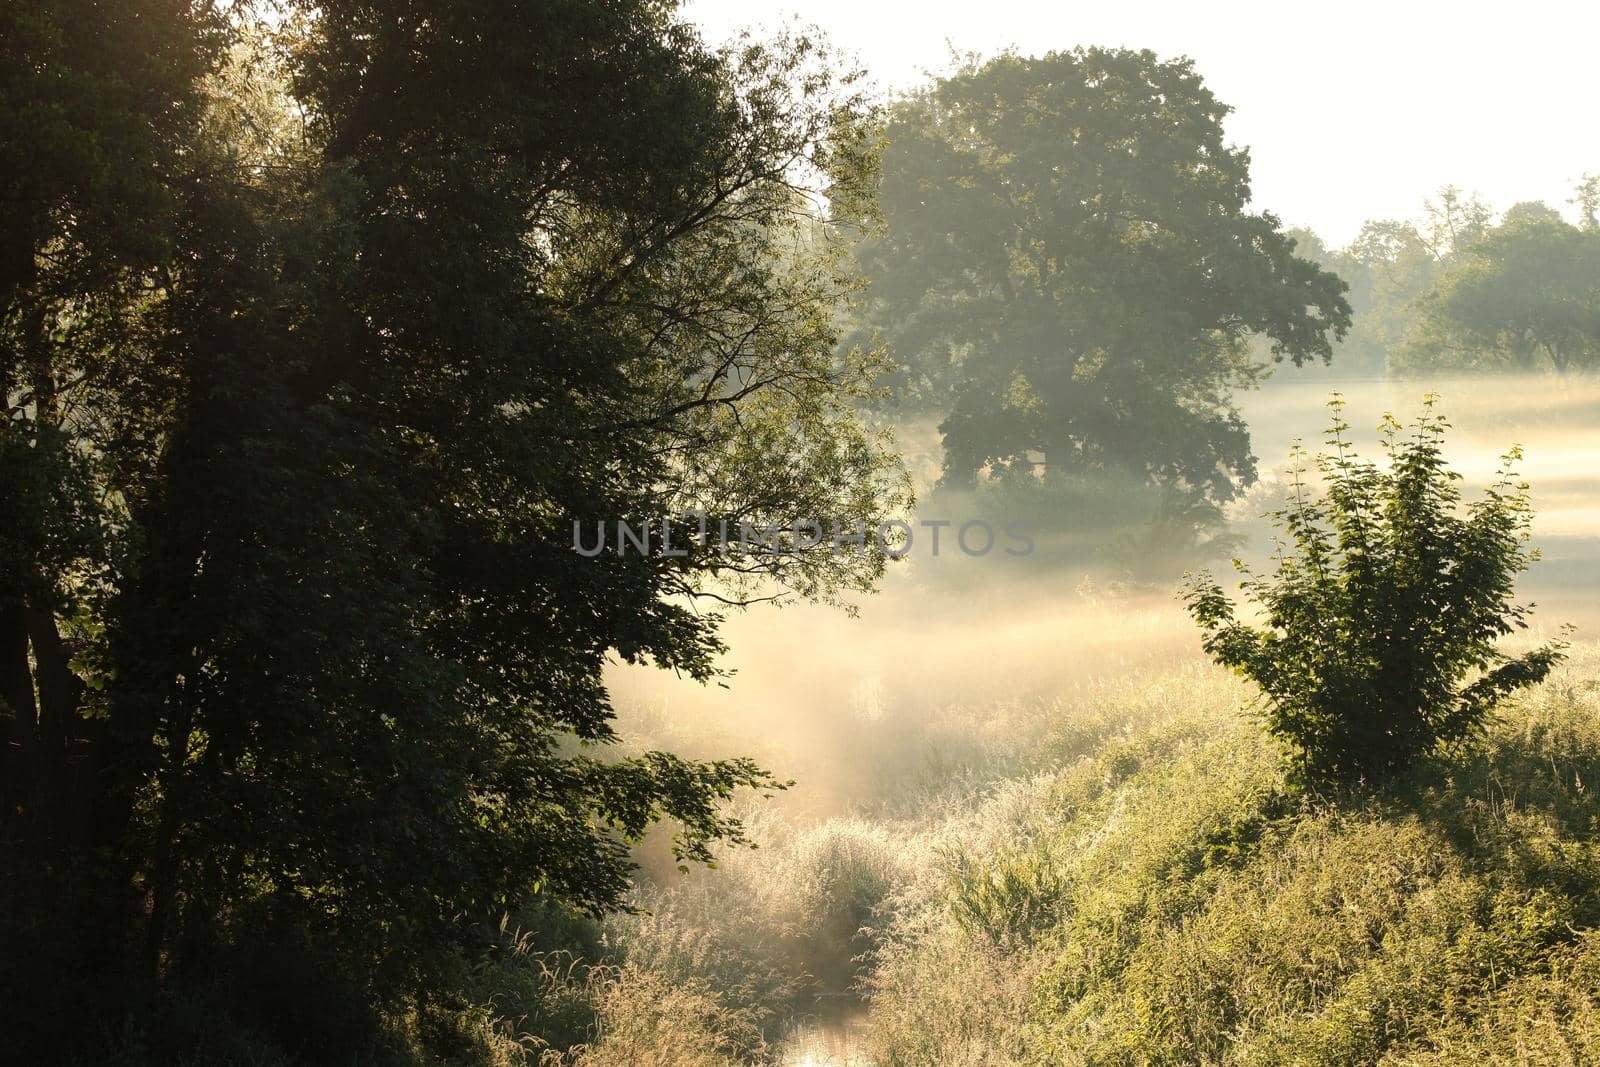 Rural landscape on a misty summer morning.